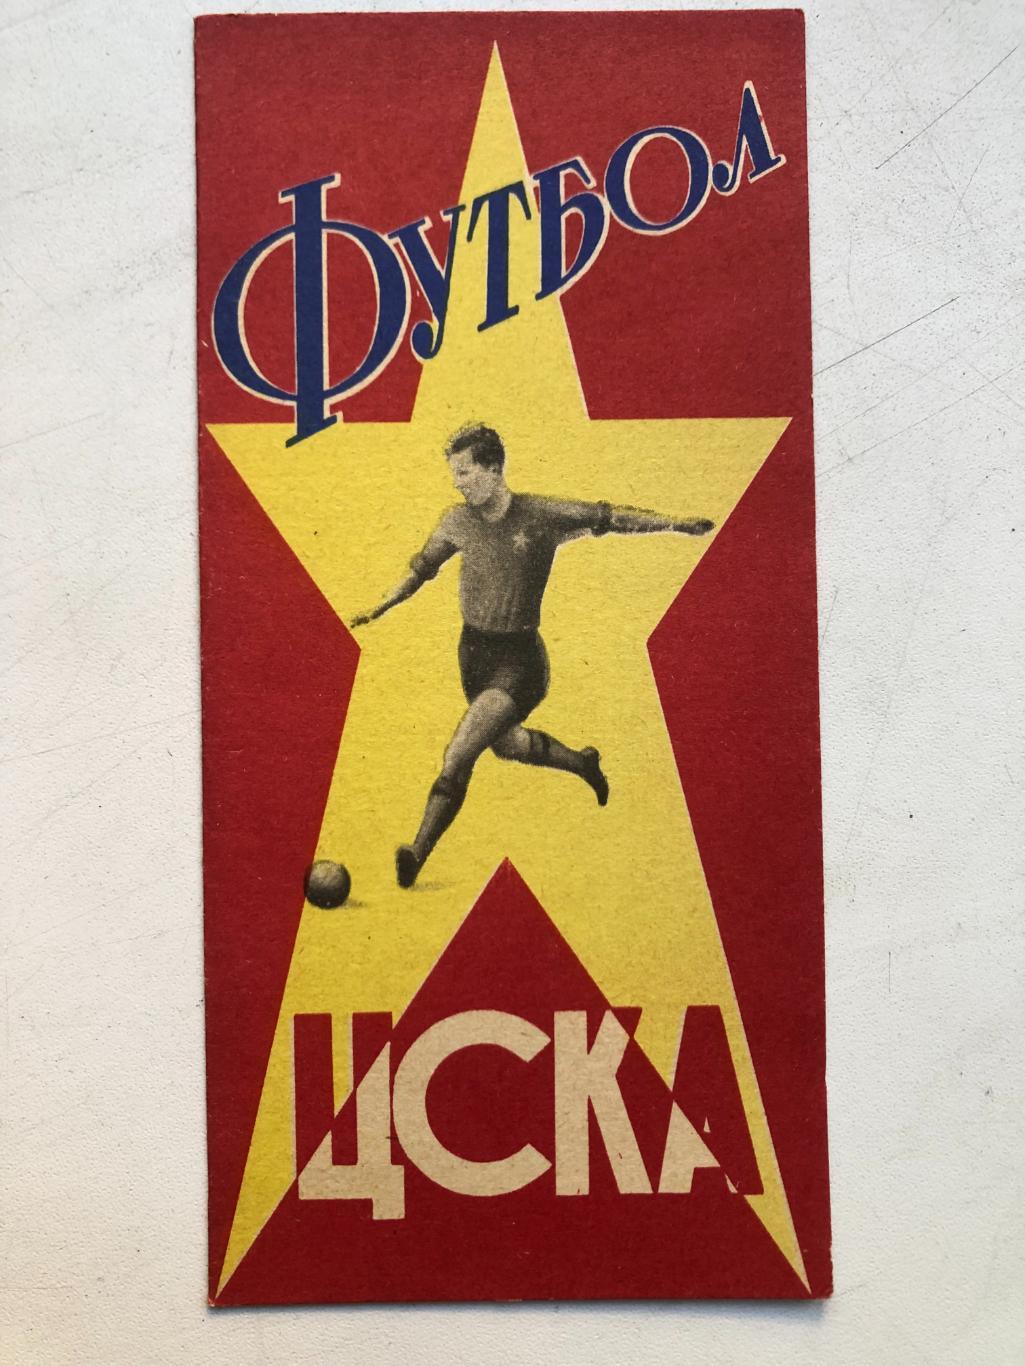 ЦСКА 1964 фото буклет Пресс-бюро стадиона им. Ленина